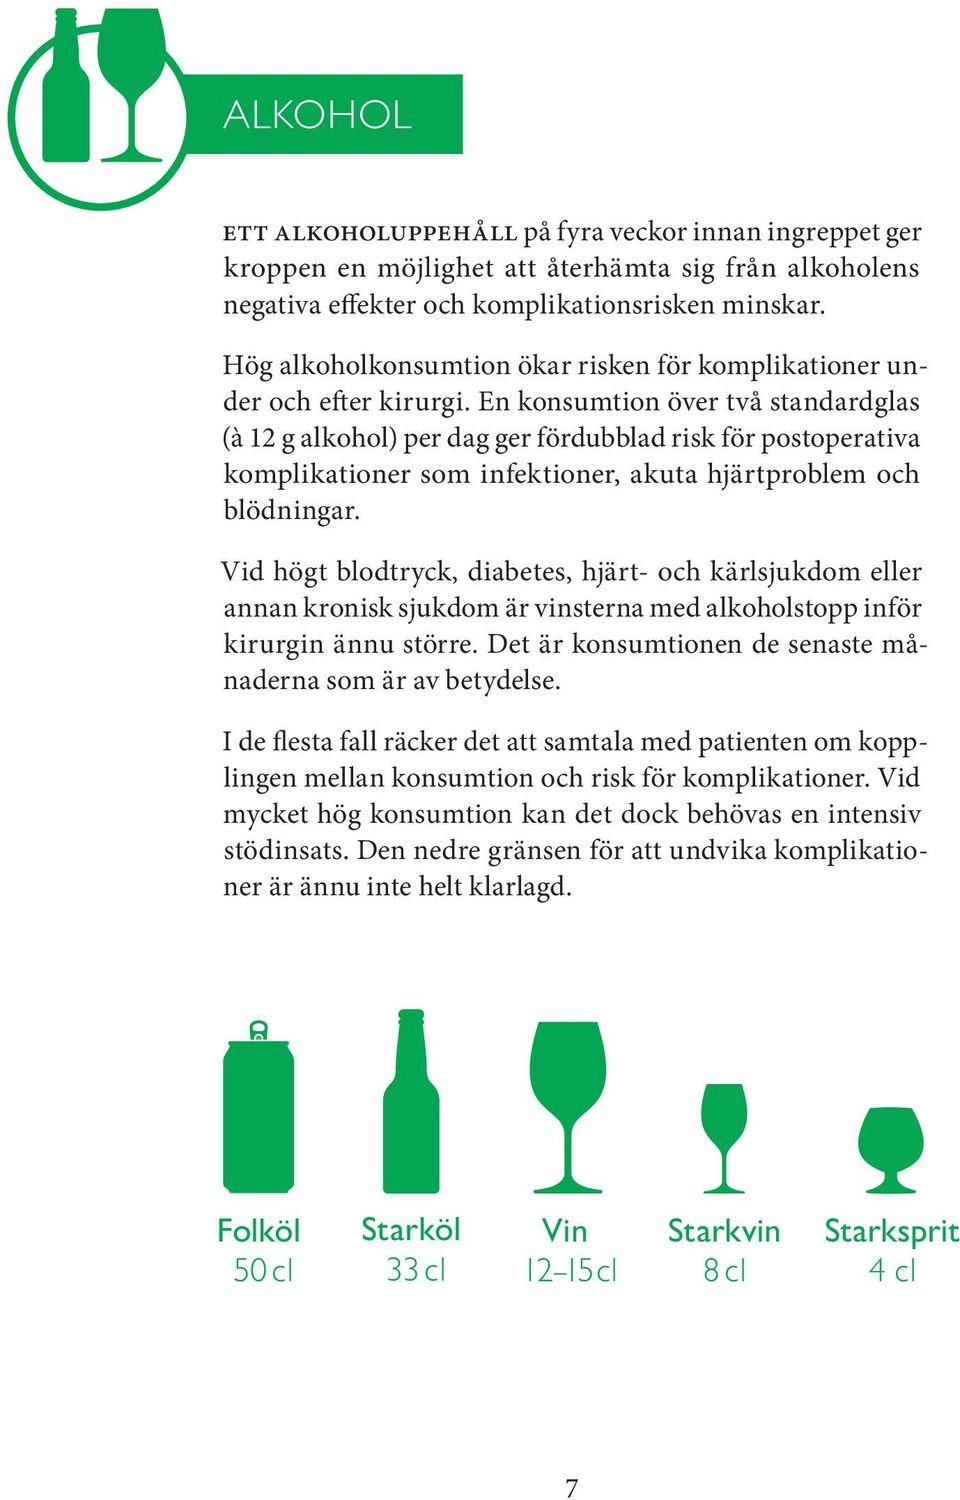 En konsumtion över två standardglas (à 12 g alkohol) per dag ger fördubblad risk för postoperativa komplikationer som infektioner, akuta hjärtproblem och blödningar.